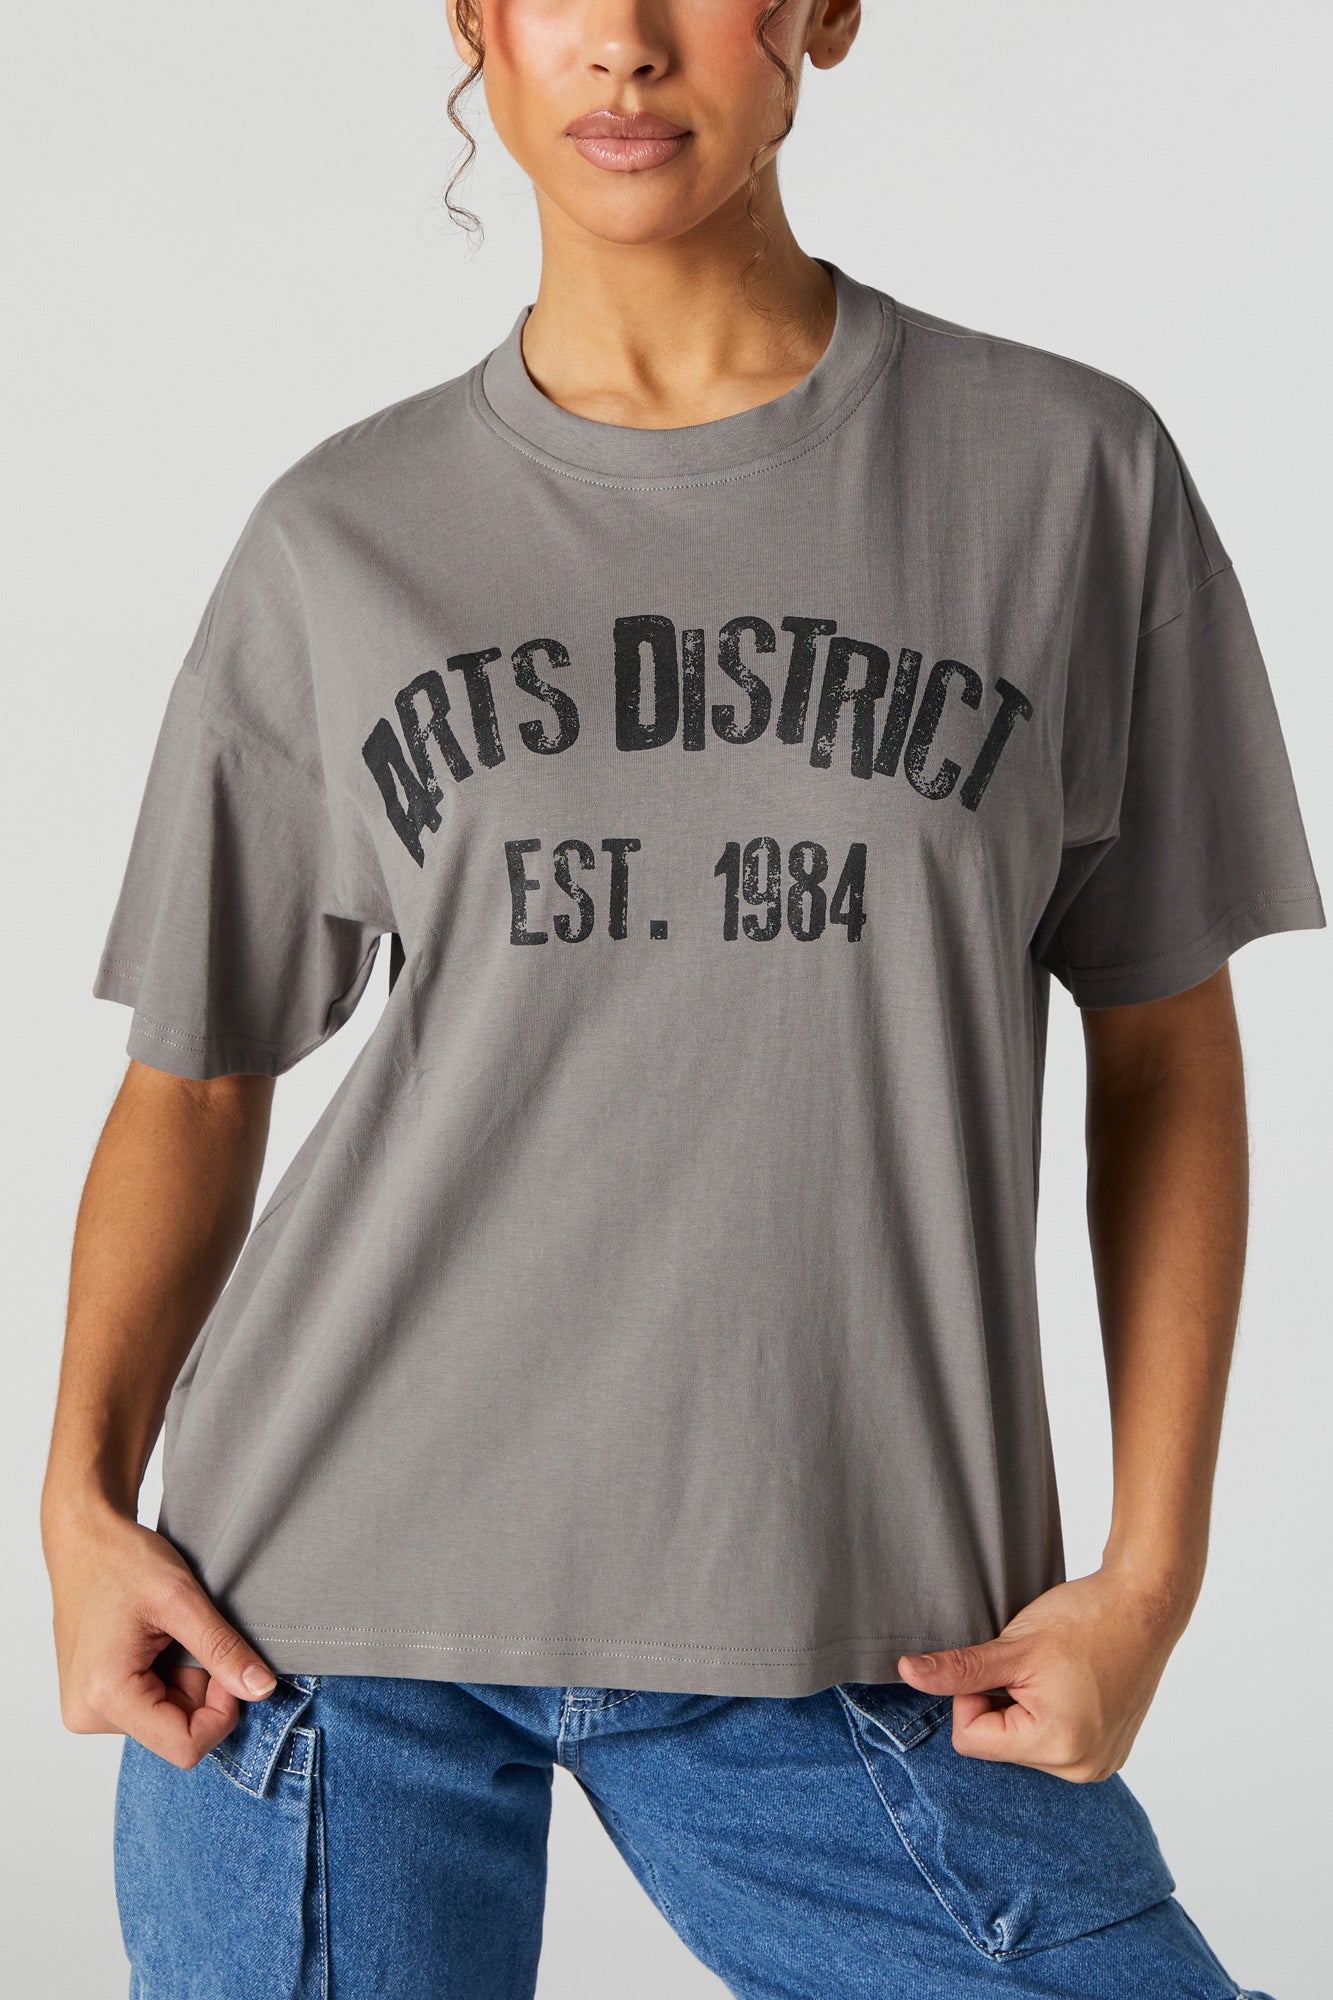 Arts District Graphic Boyfriend T-Shirt